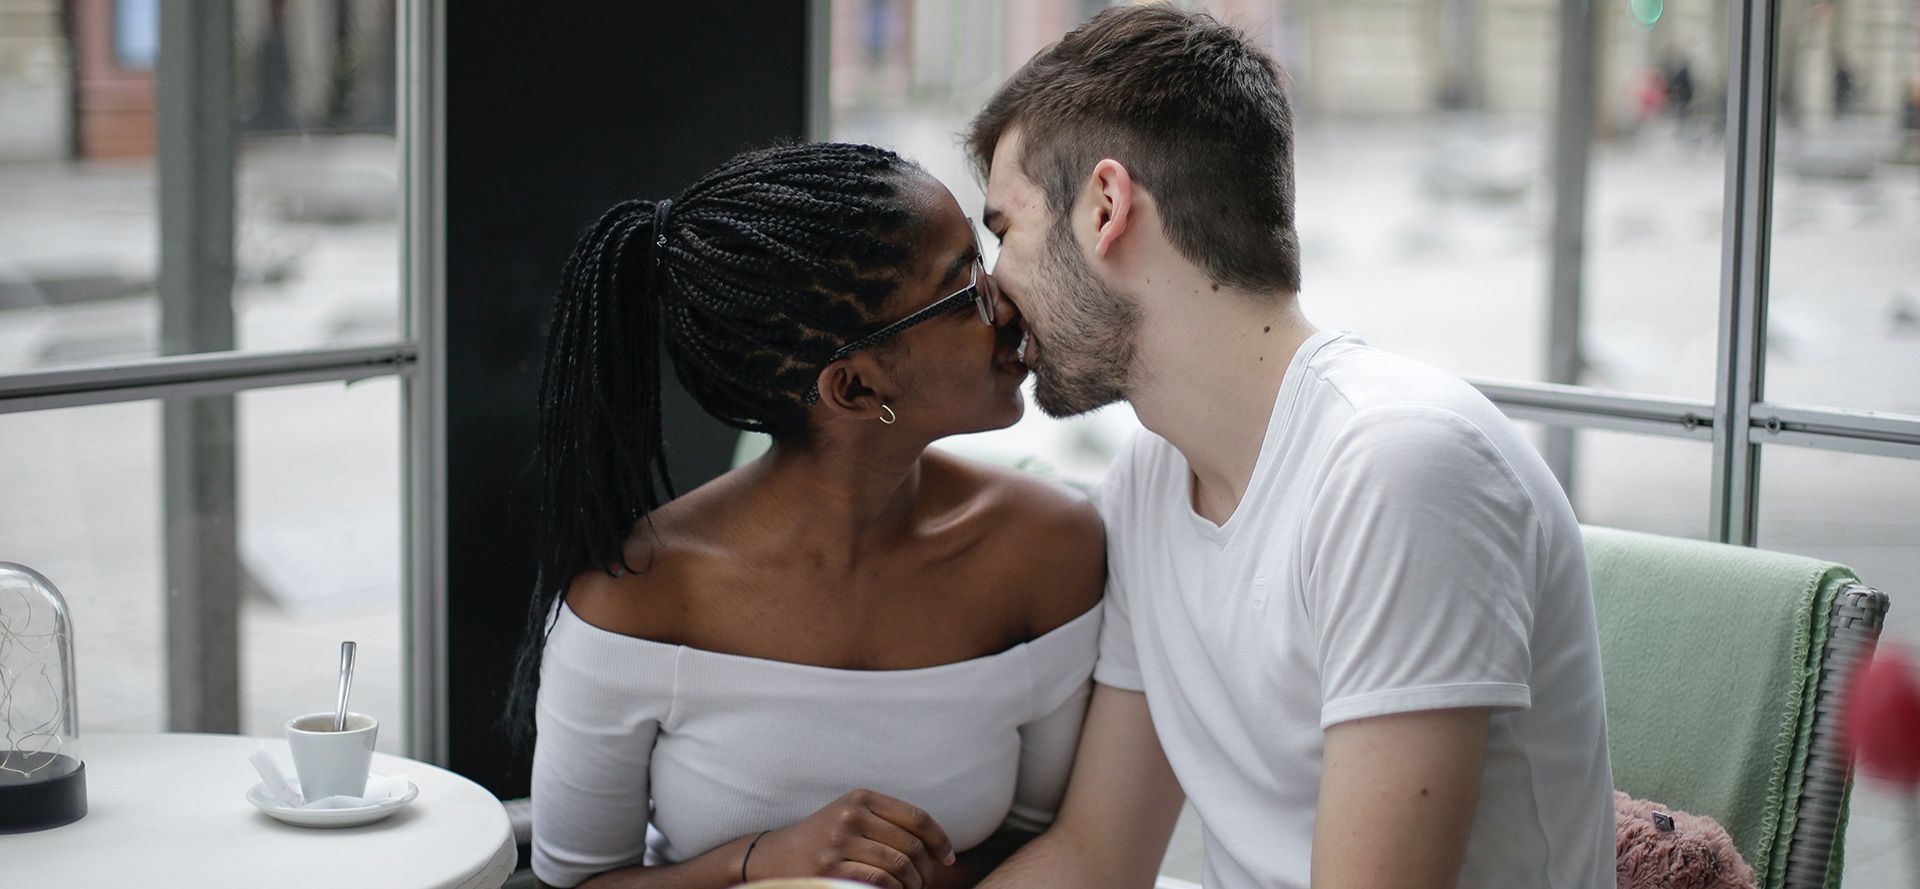 Una pareja internacional se besa en una cafetería.